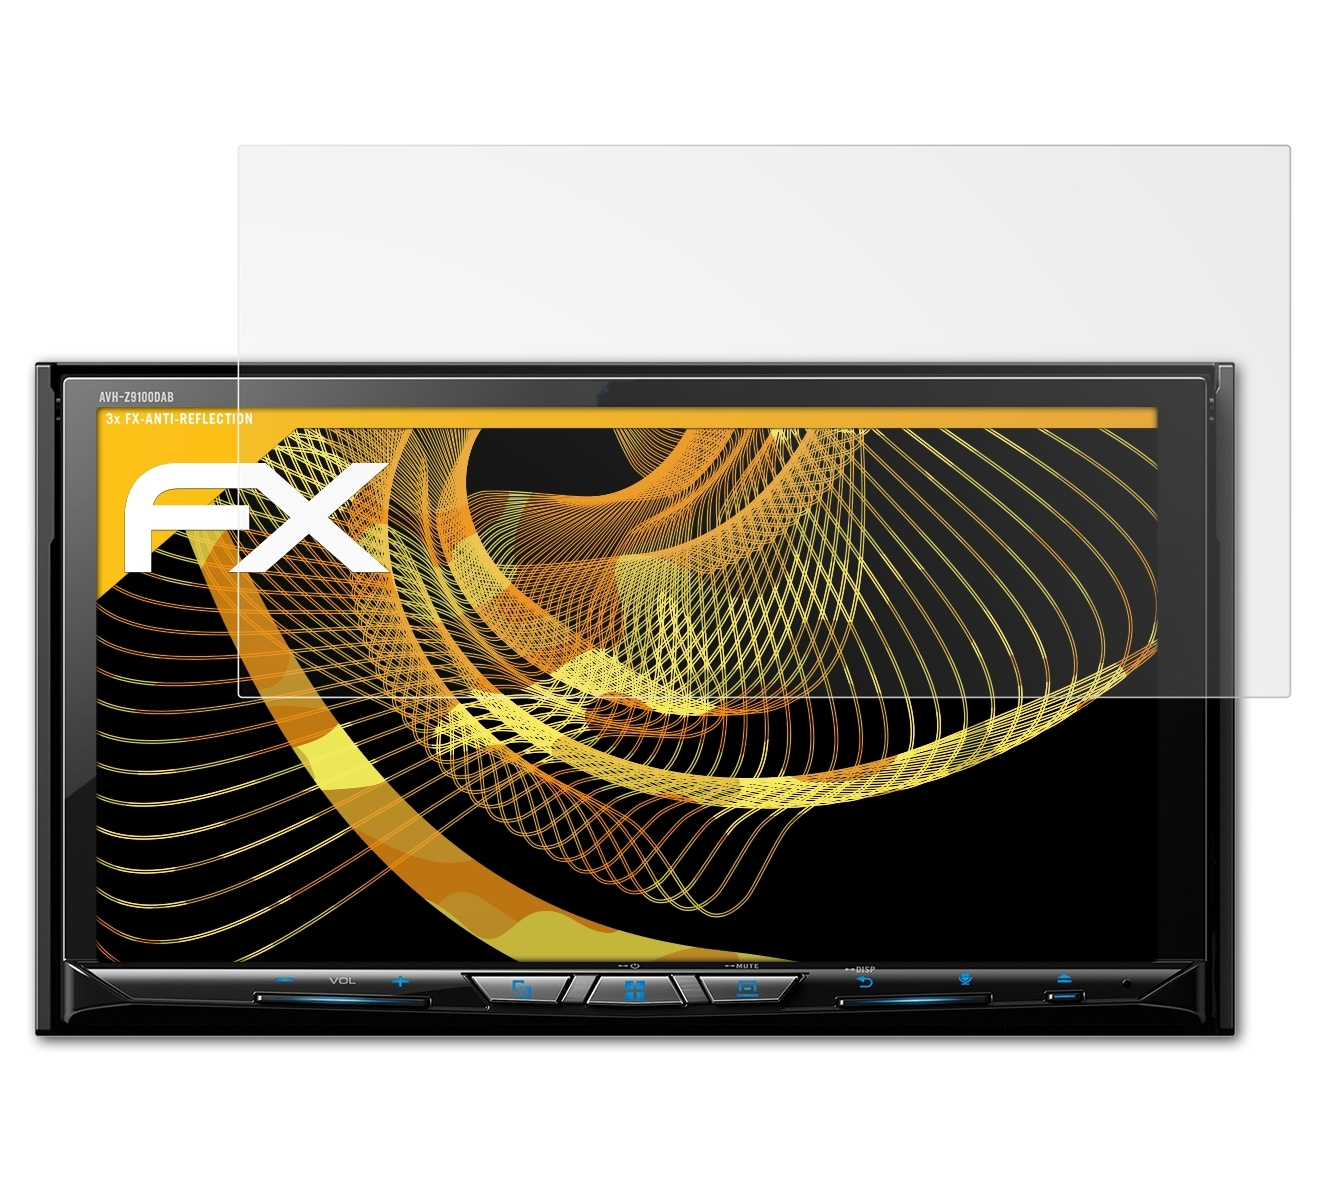 Displayschutz(für ATFOLIX 3x AVH-Z9100DAB) FX-Antireflex Pioneer